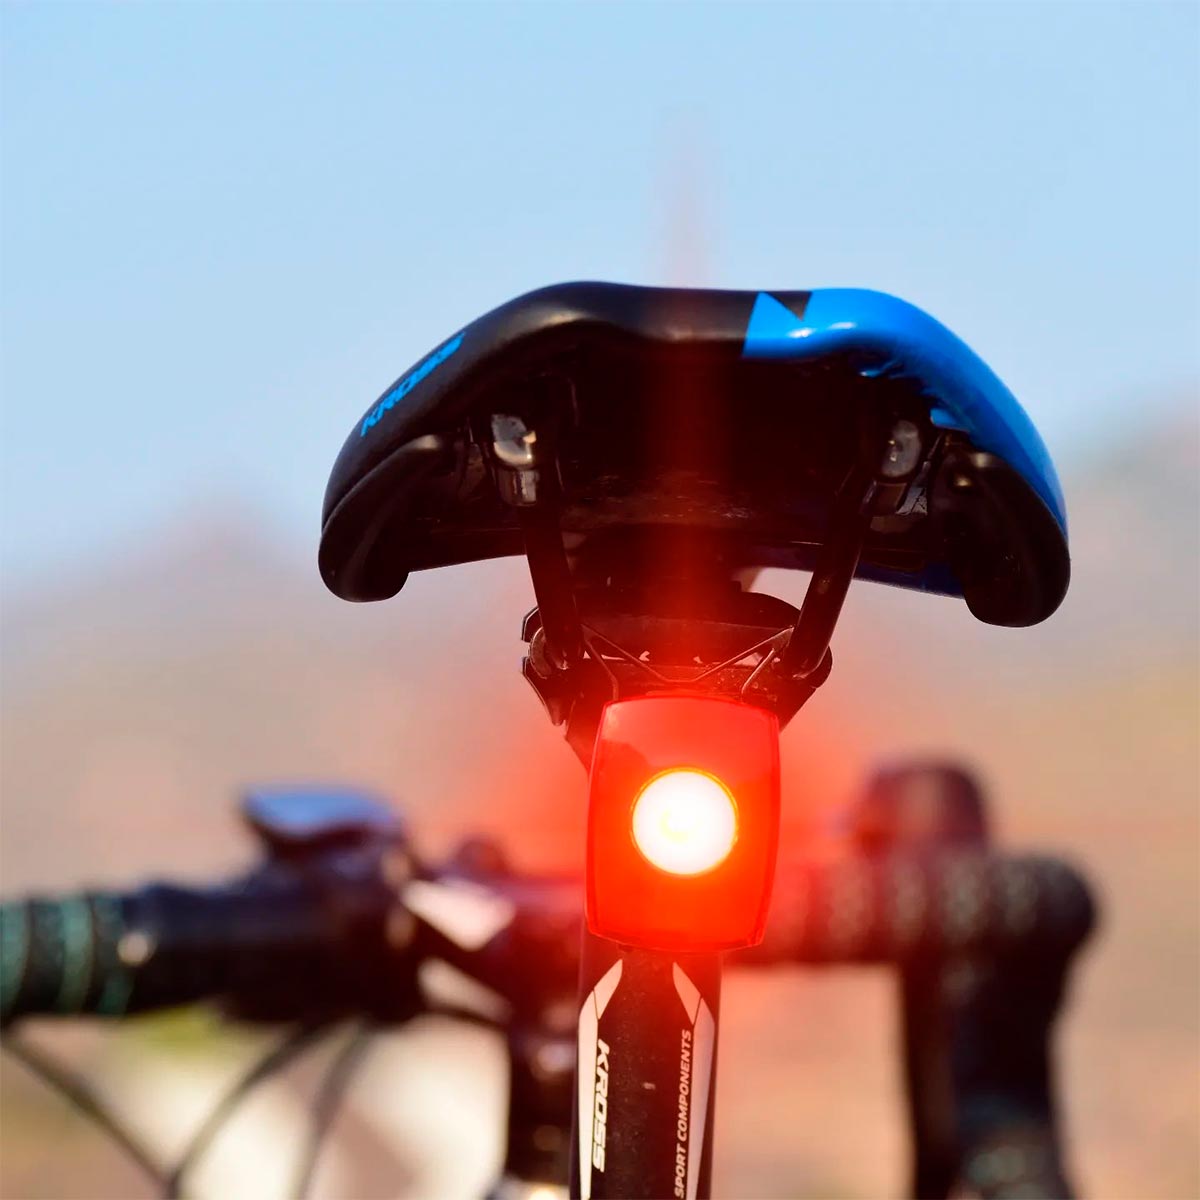 Pygomic P1-F 200 y P1-R 200, luces 'Made in Spain' para ser vistos de día y de noche sobre la bicicleta